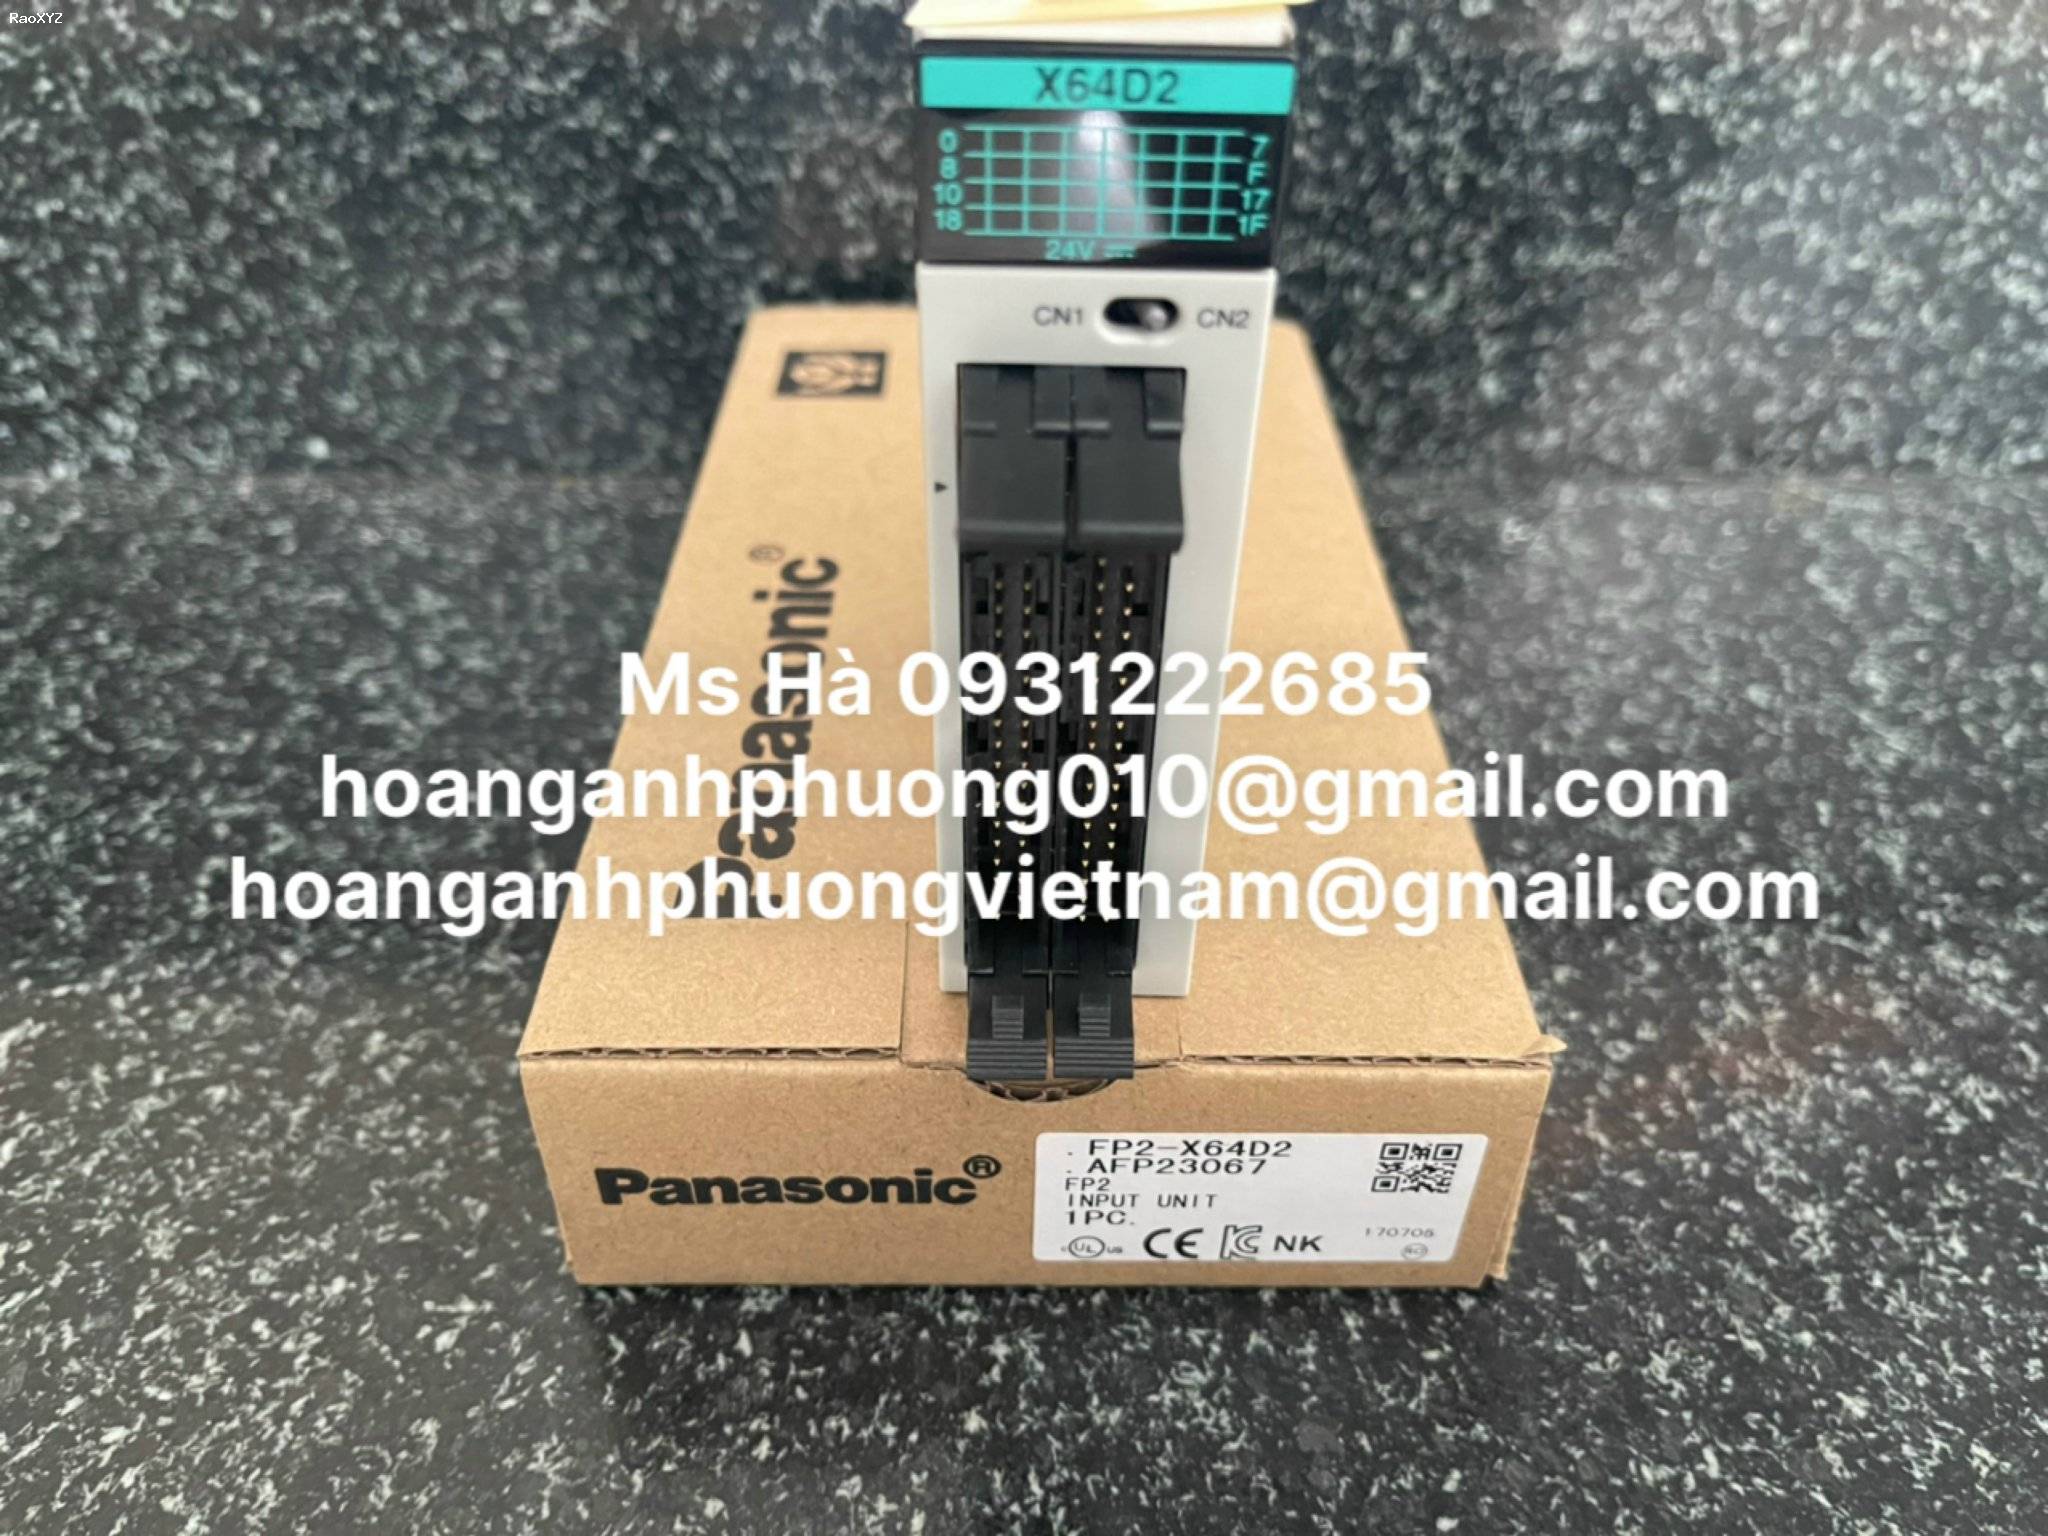 Panasonic FP2-X64D2 bộ PLC chính hãng 100%